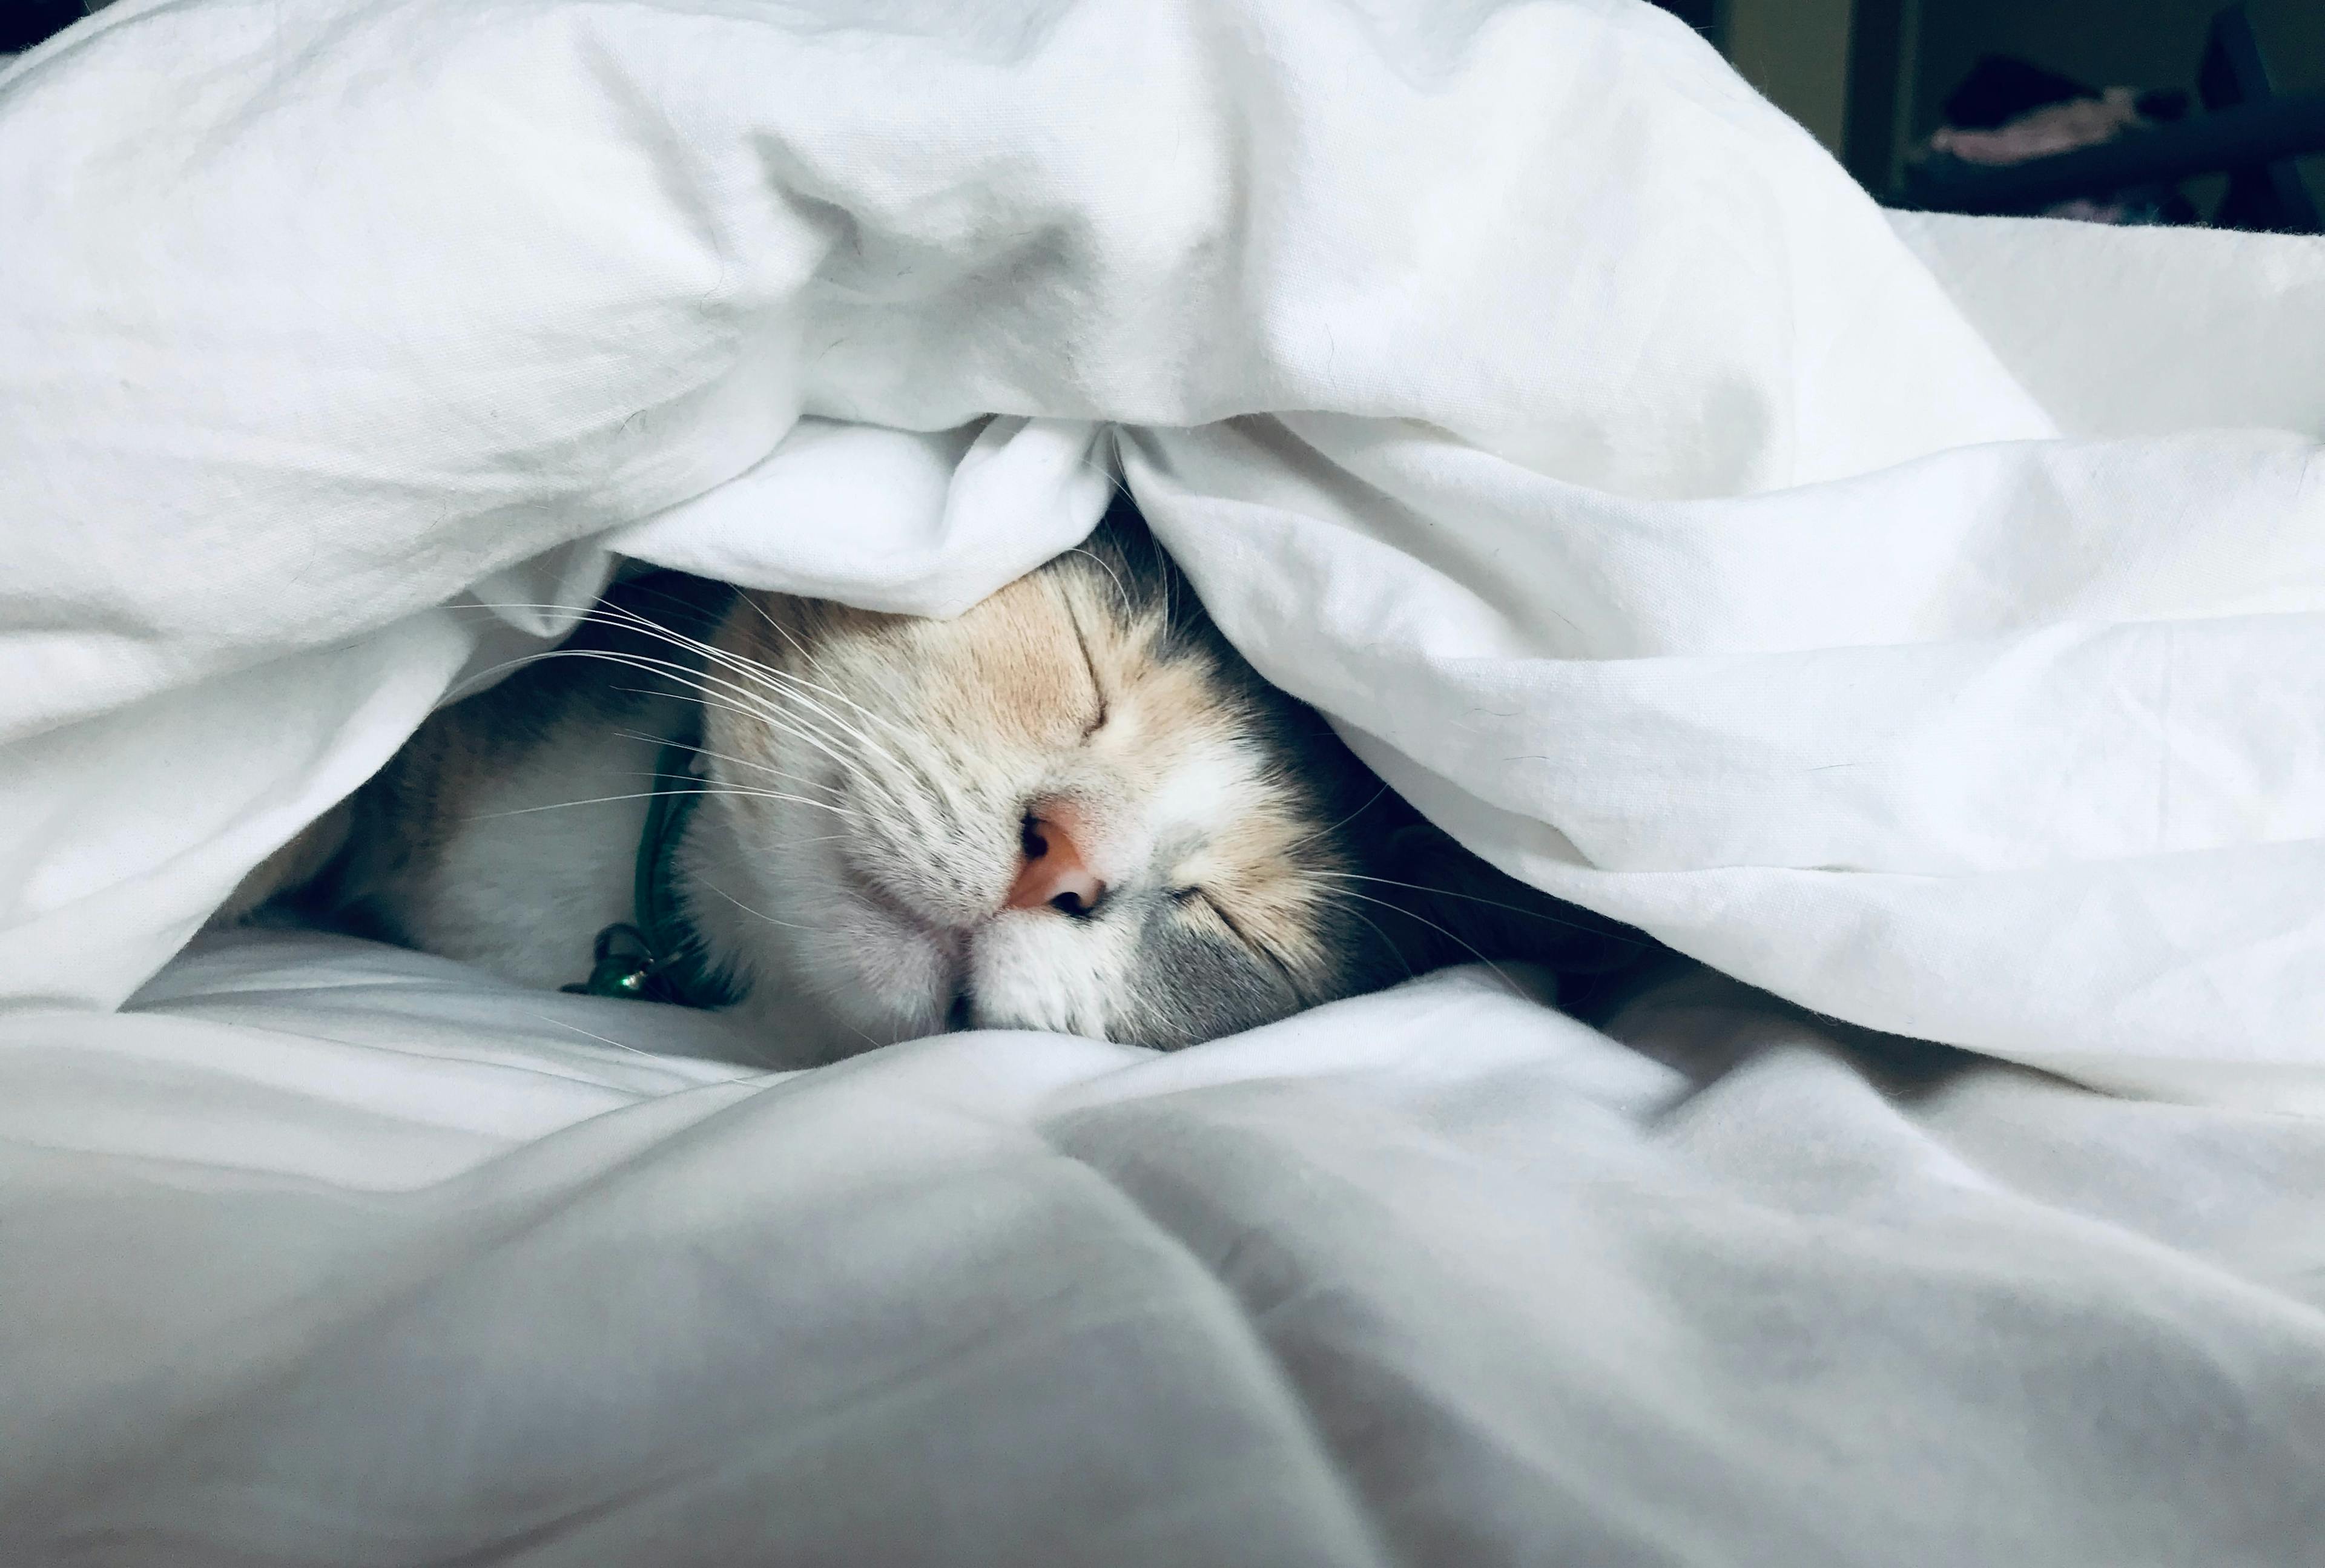 Gato marrón y blanco durmiendo bajo sábanas blancas con una expresión de relajación y buen descanso.